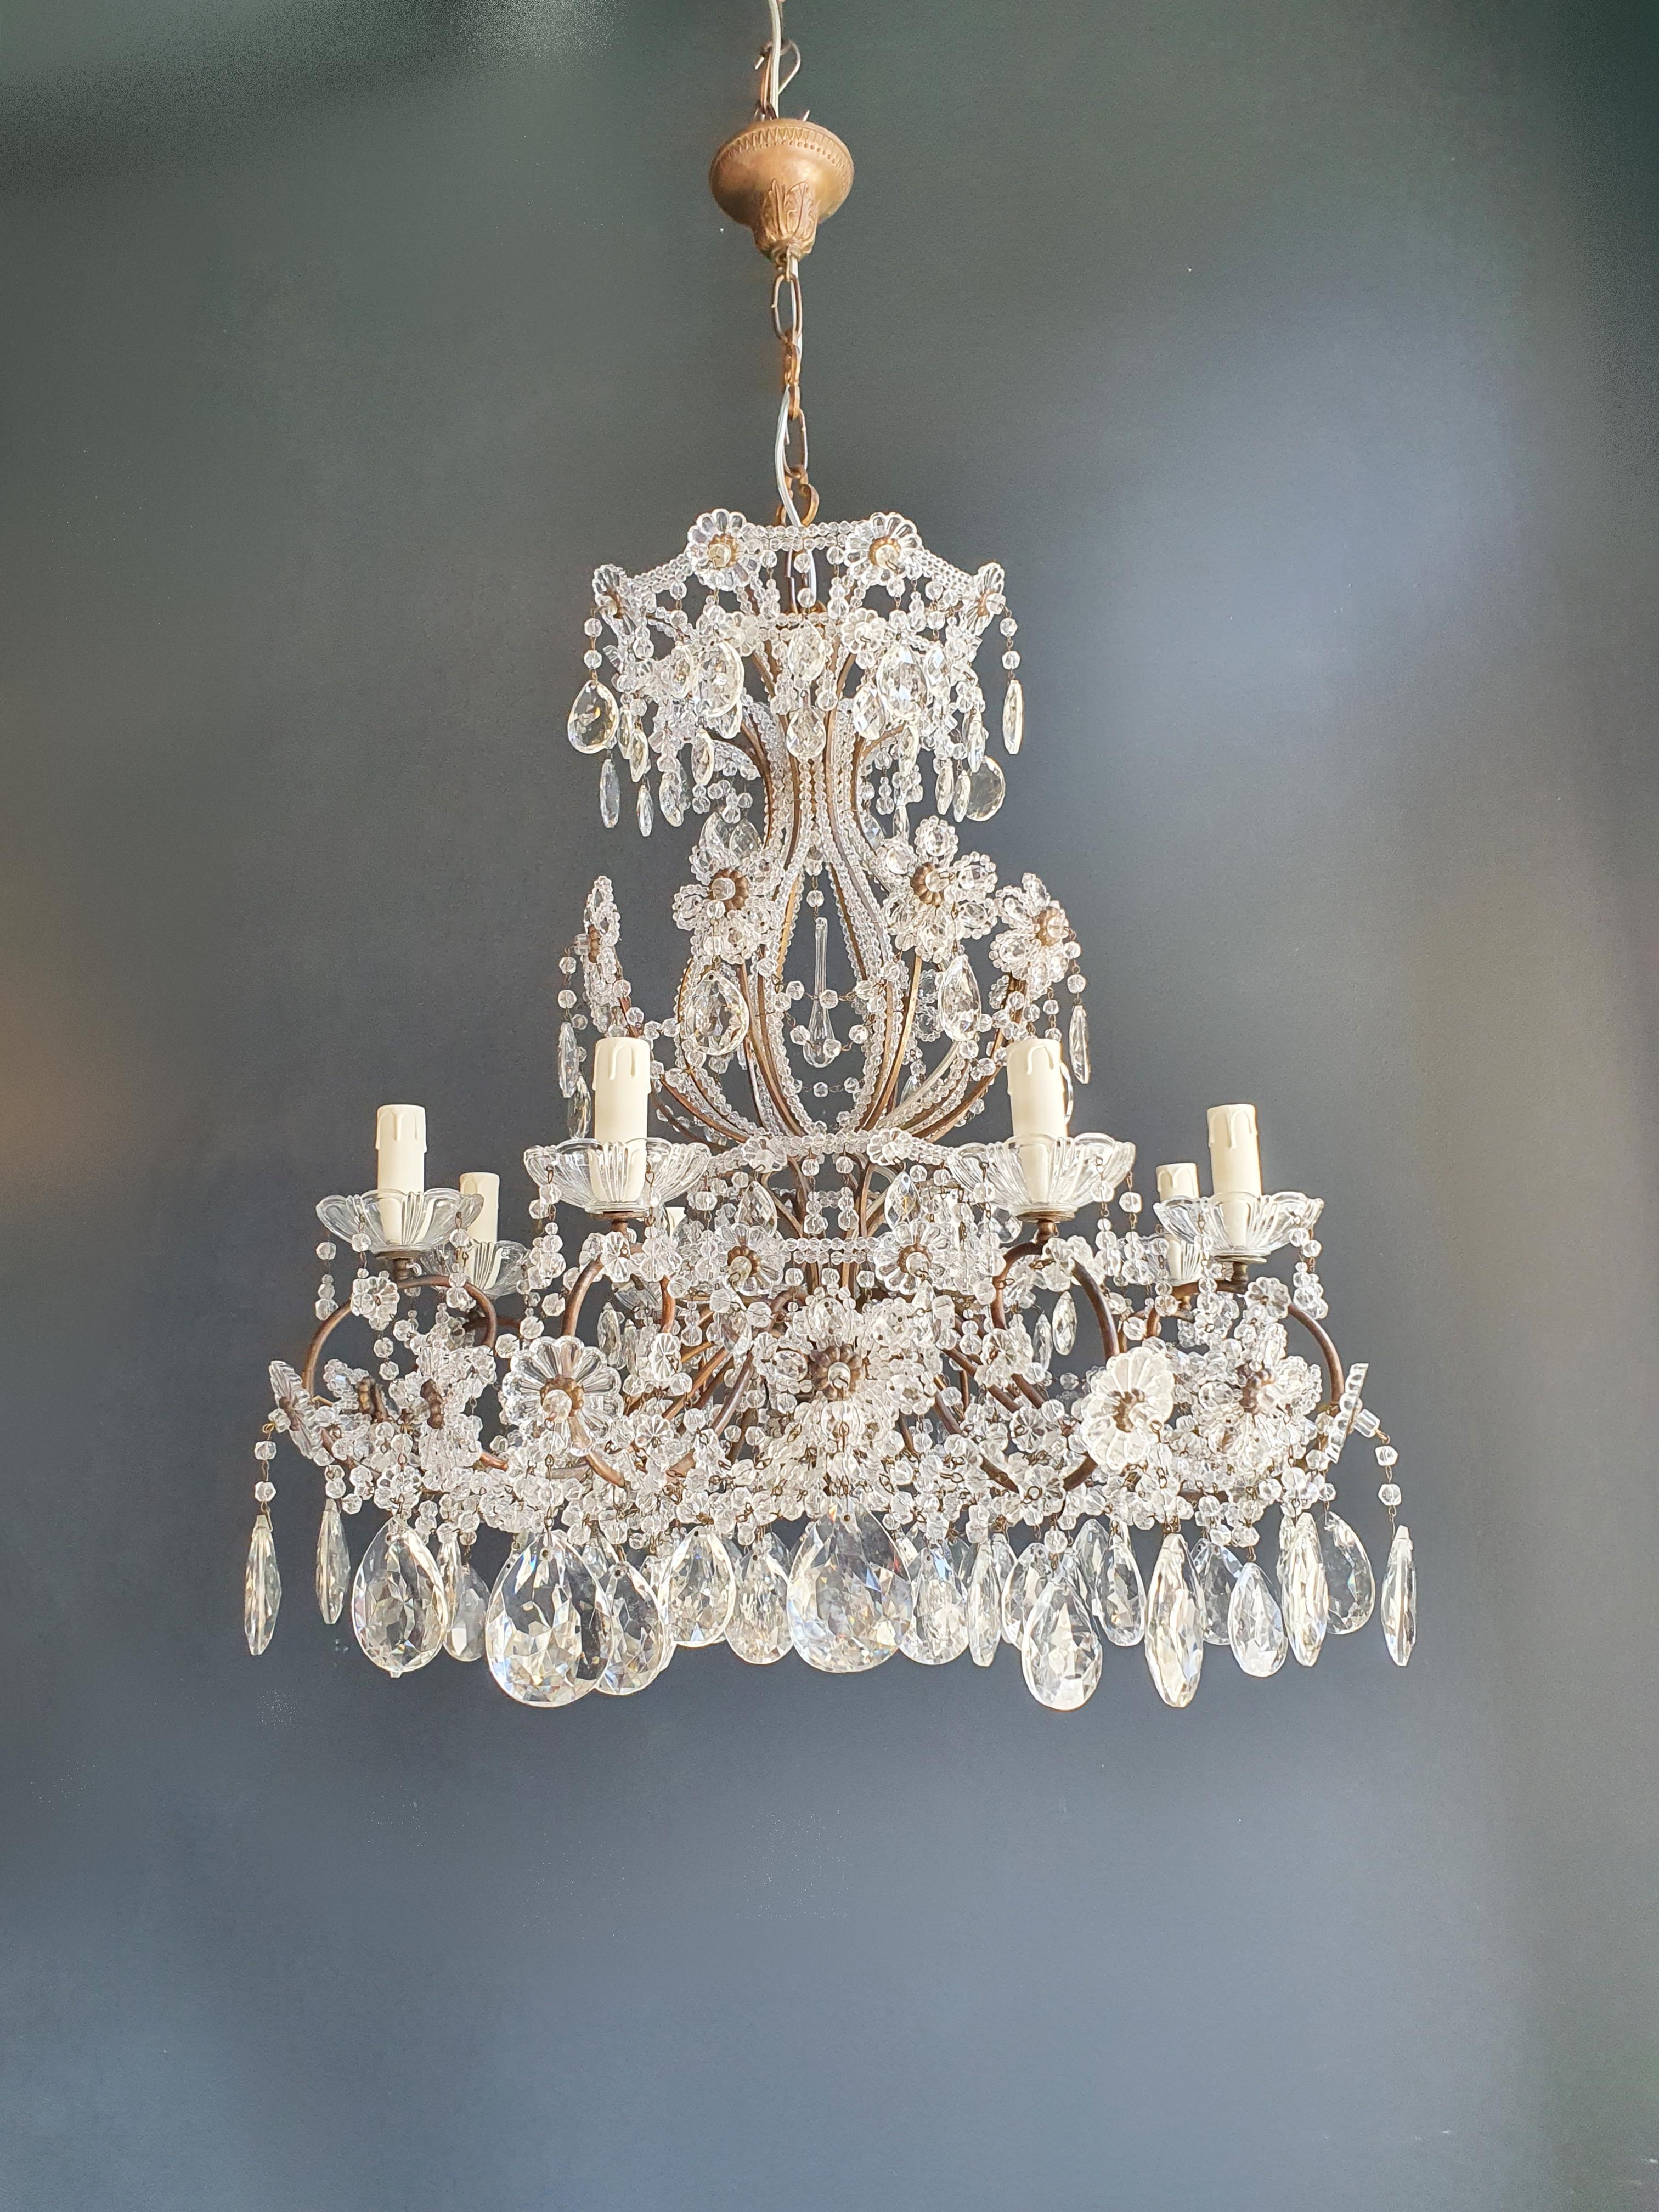 Brass Crystal Chandelier Antique Ceiling Lamp Lustre Art Nouveau Lamp 2